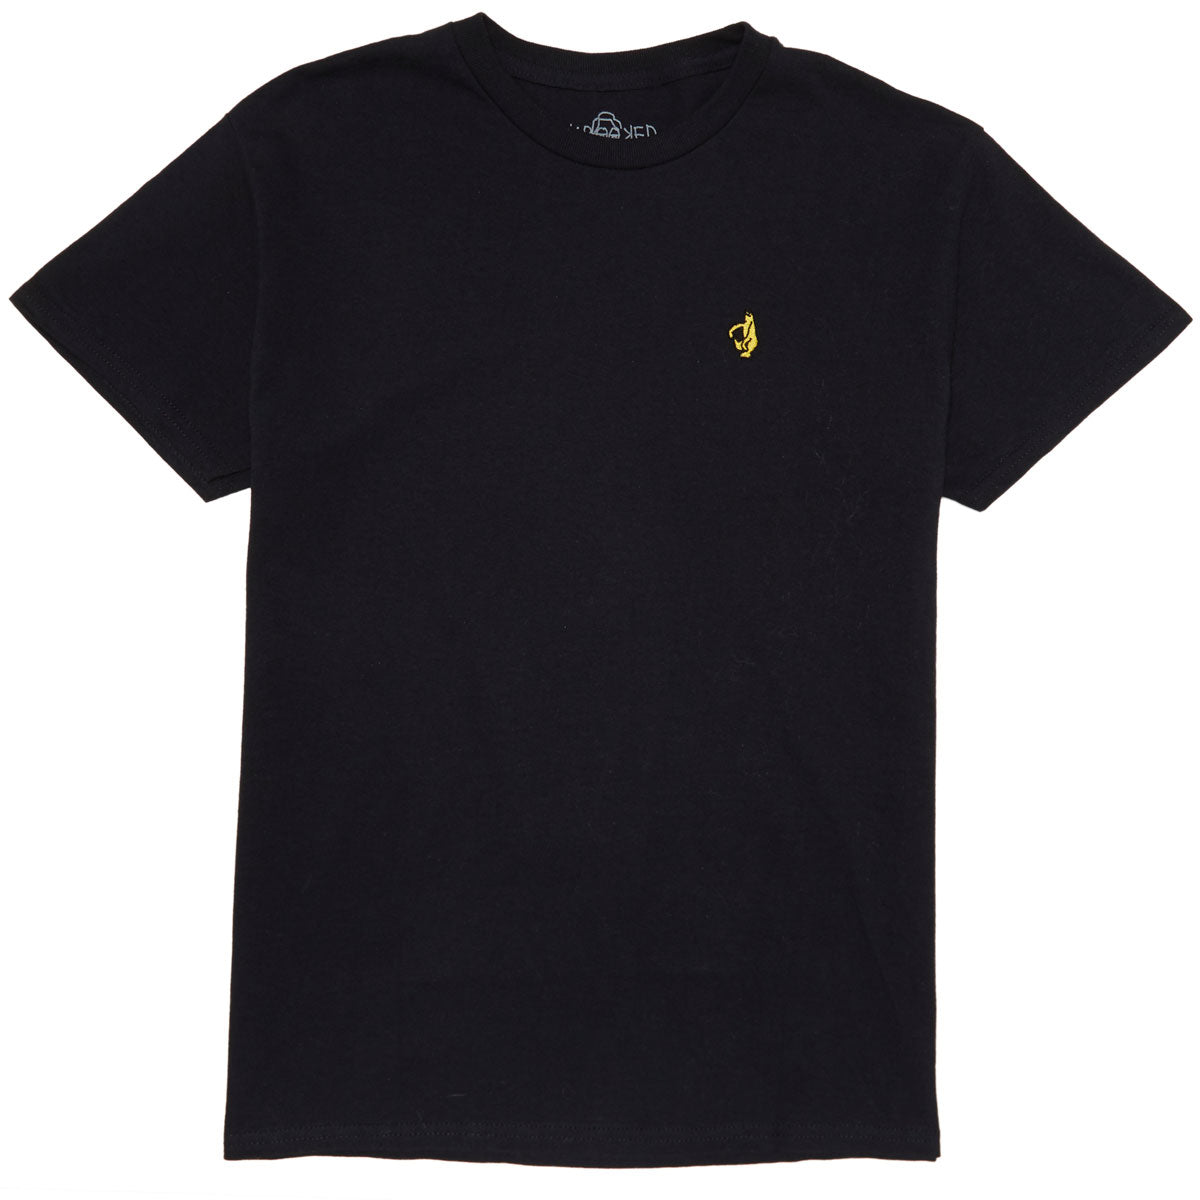 Krooked Shmoo Emb T-Shirt - Black/Yellow image 1